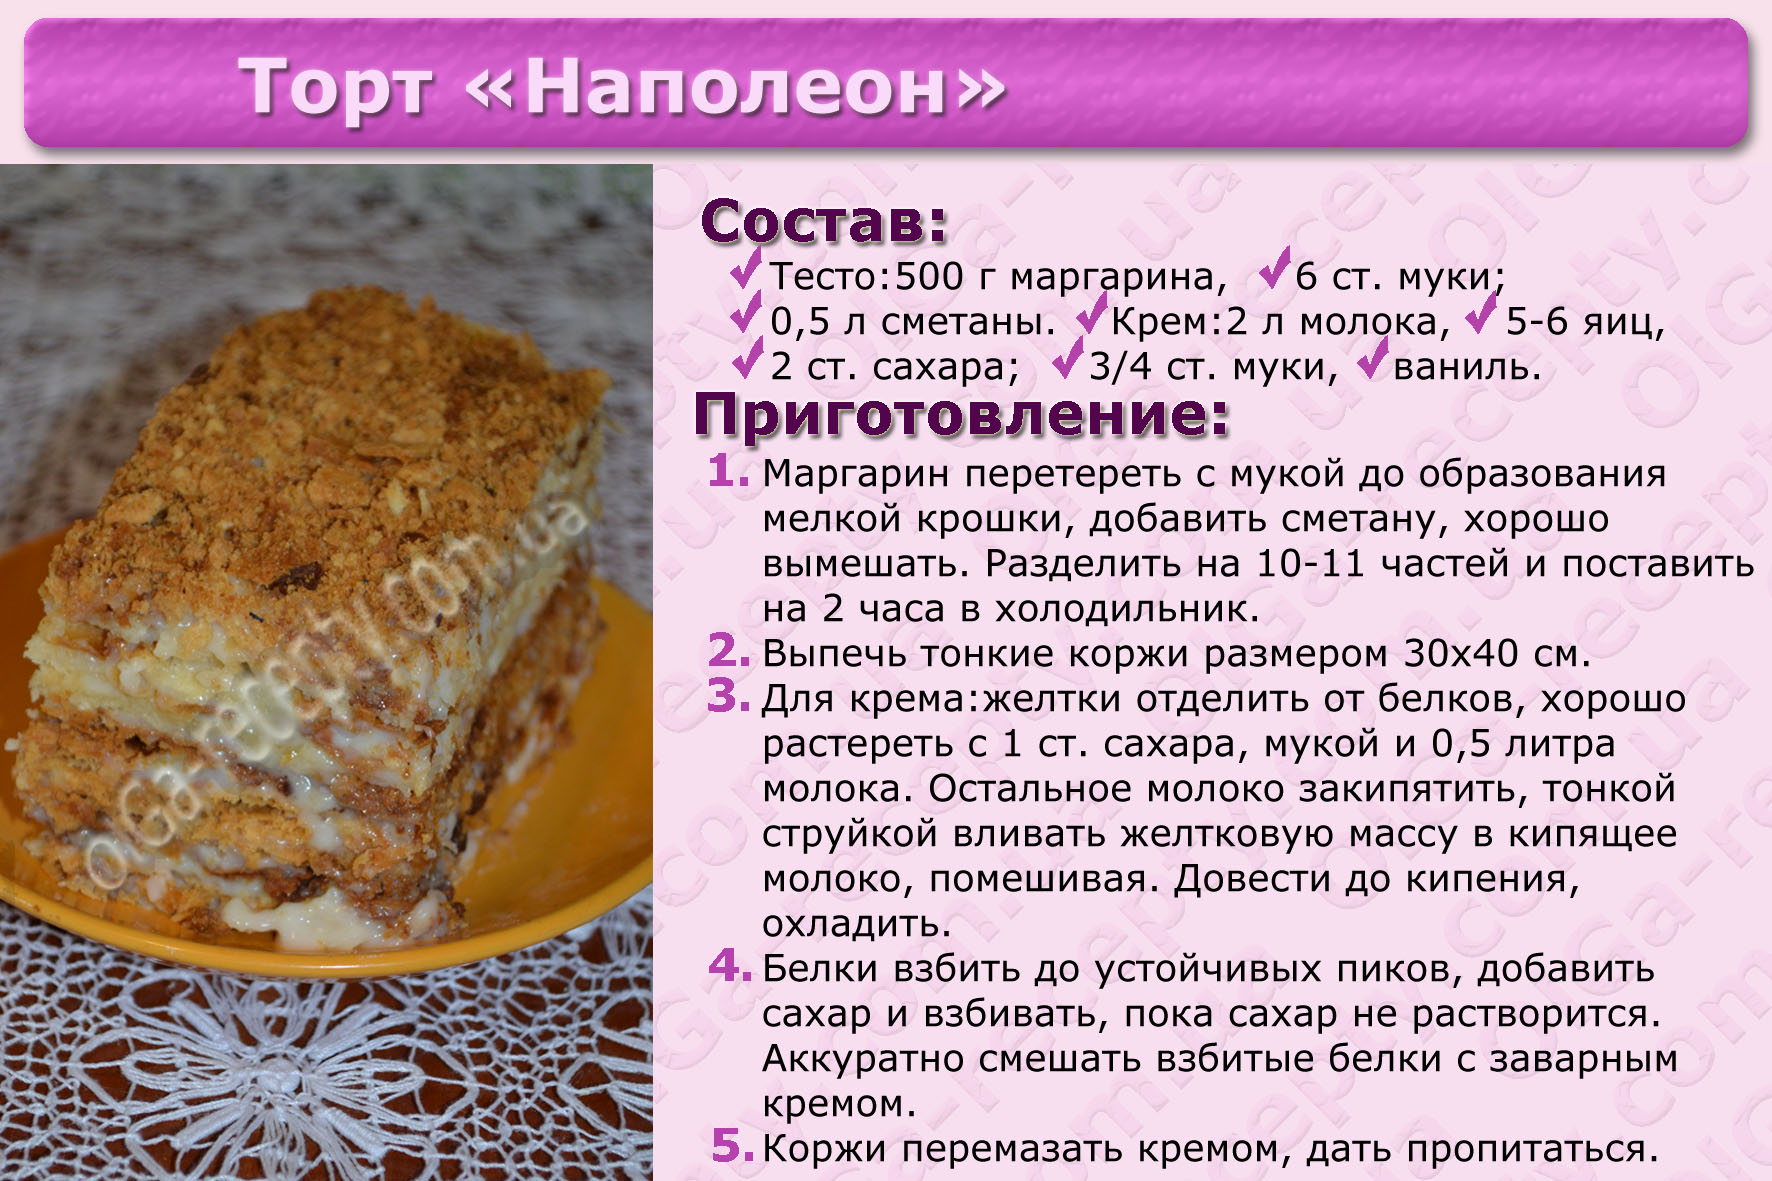 Часа в домашних условиях рецепт. Рецепты тортов с описанием. Картинки с рецептами тортов. Несложные рецепты тортов с картинкой. Рецепт торта красивый простой.